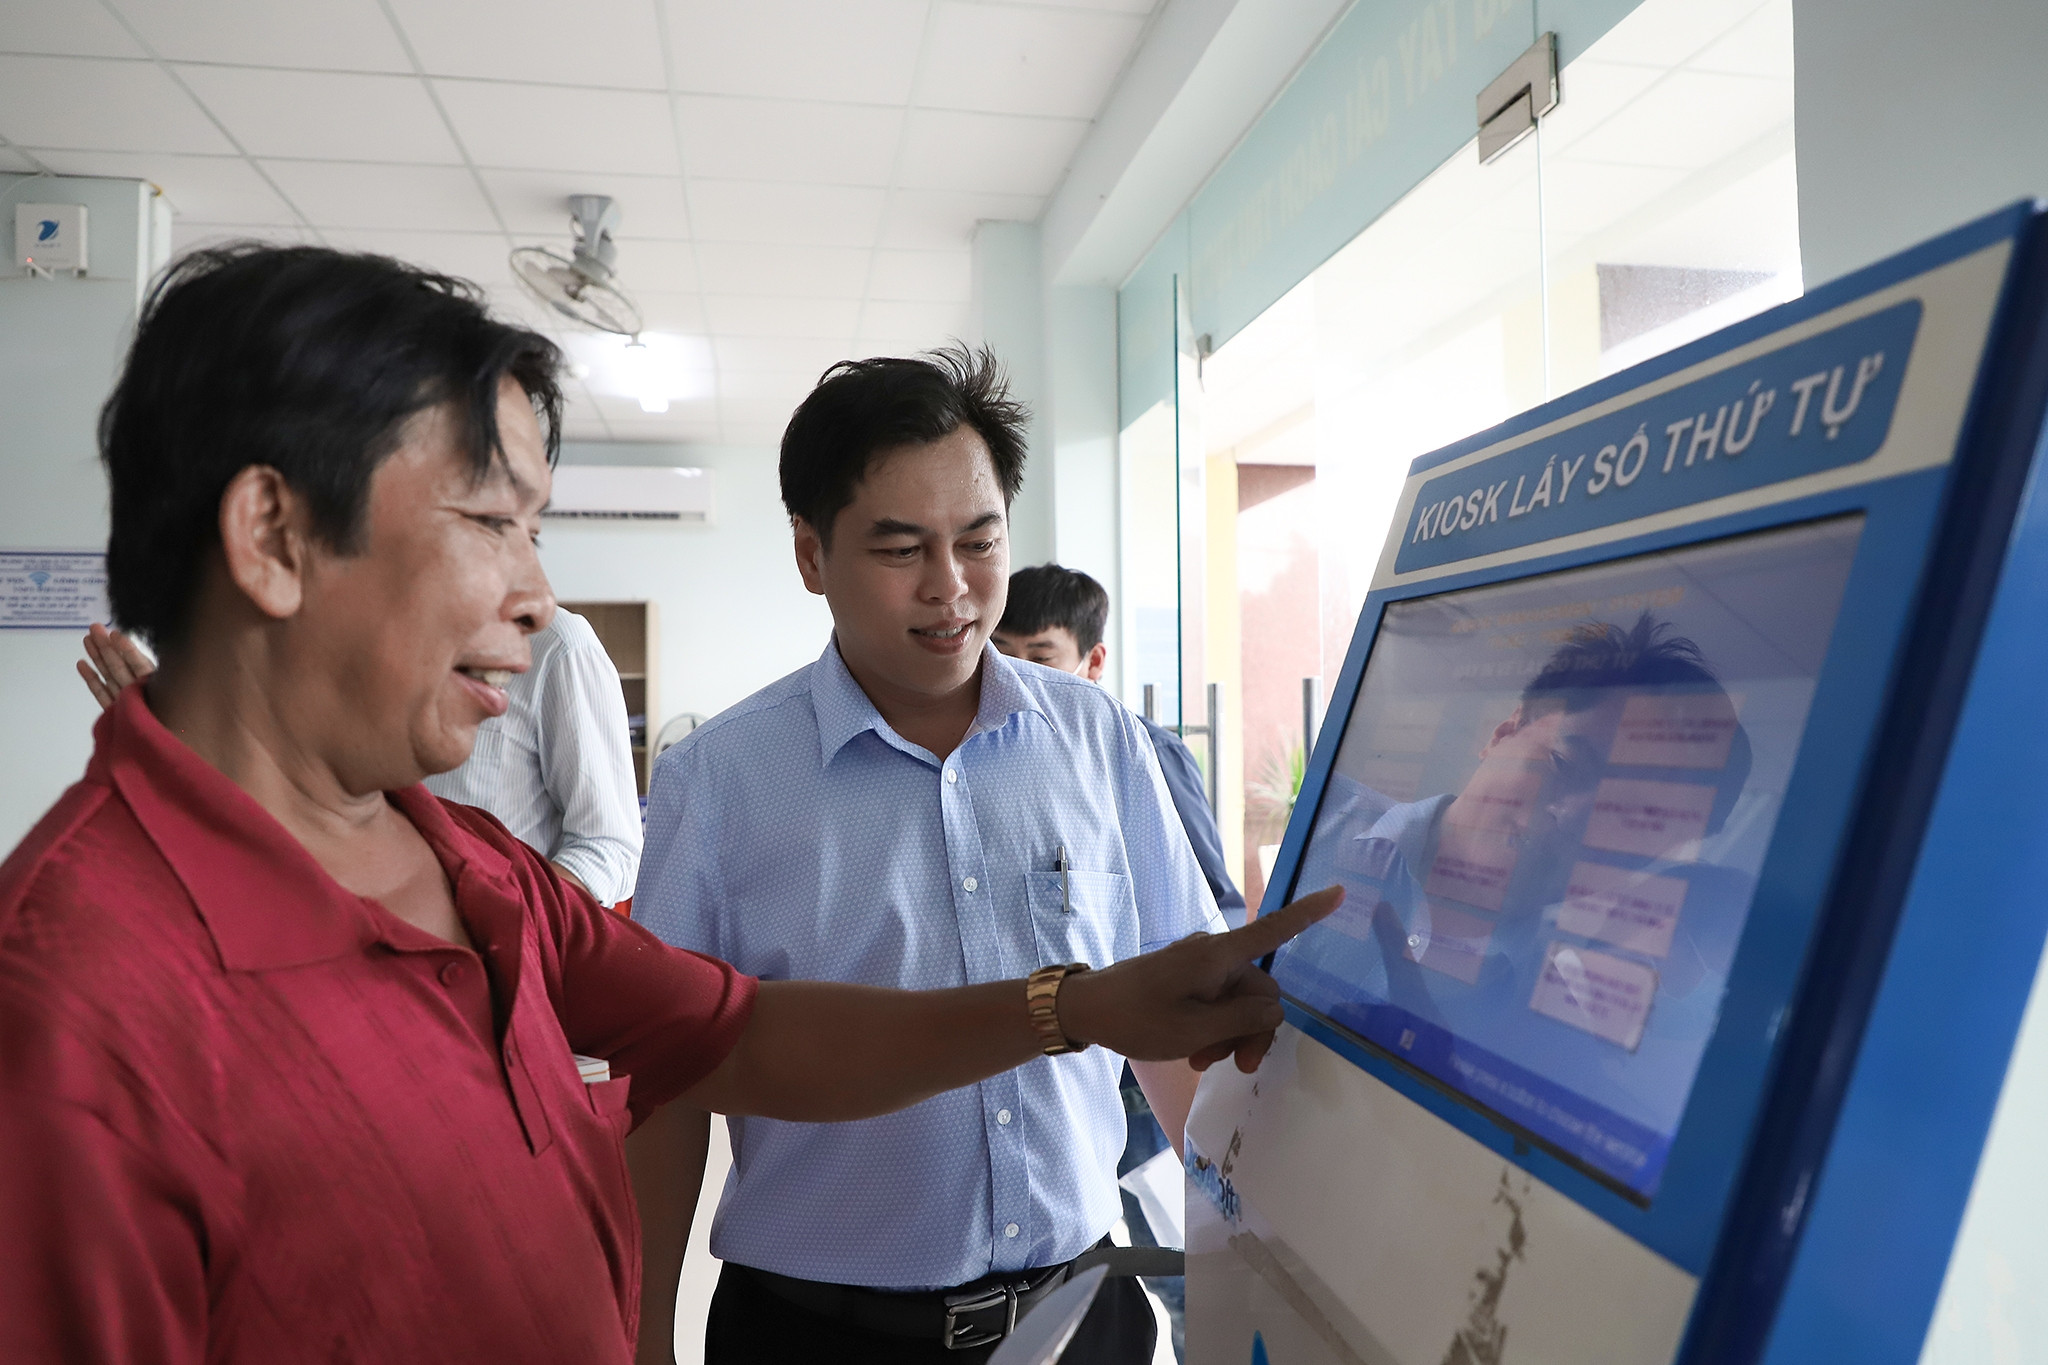 Chuyển đổi số ở Tây Ninh hỗ trợ đắc lực người dân giải quyết thủ tục hành chính